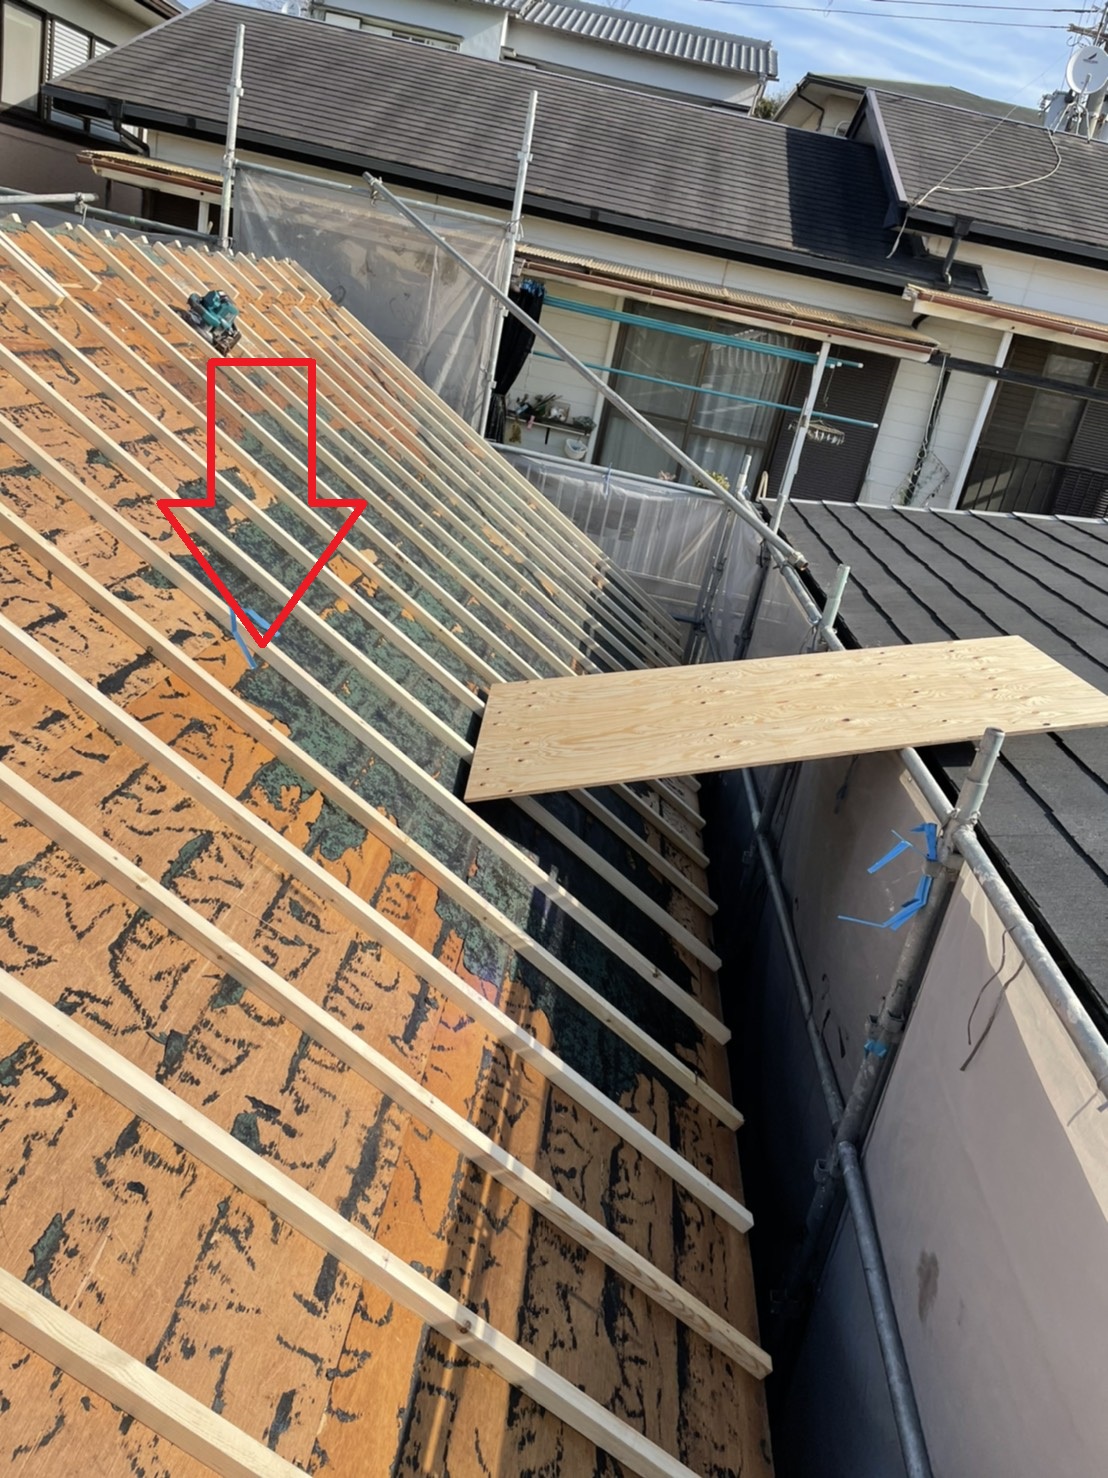 屋根の断熱効果を高めるために垂木を使用して空気層を作っている様子